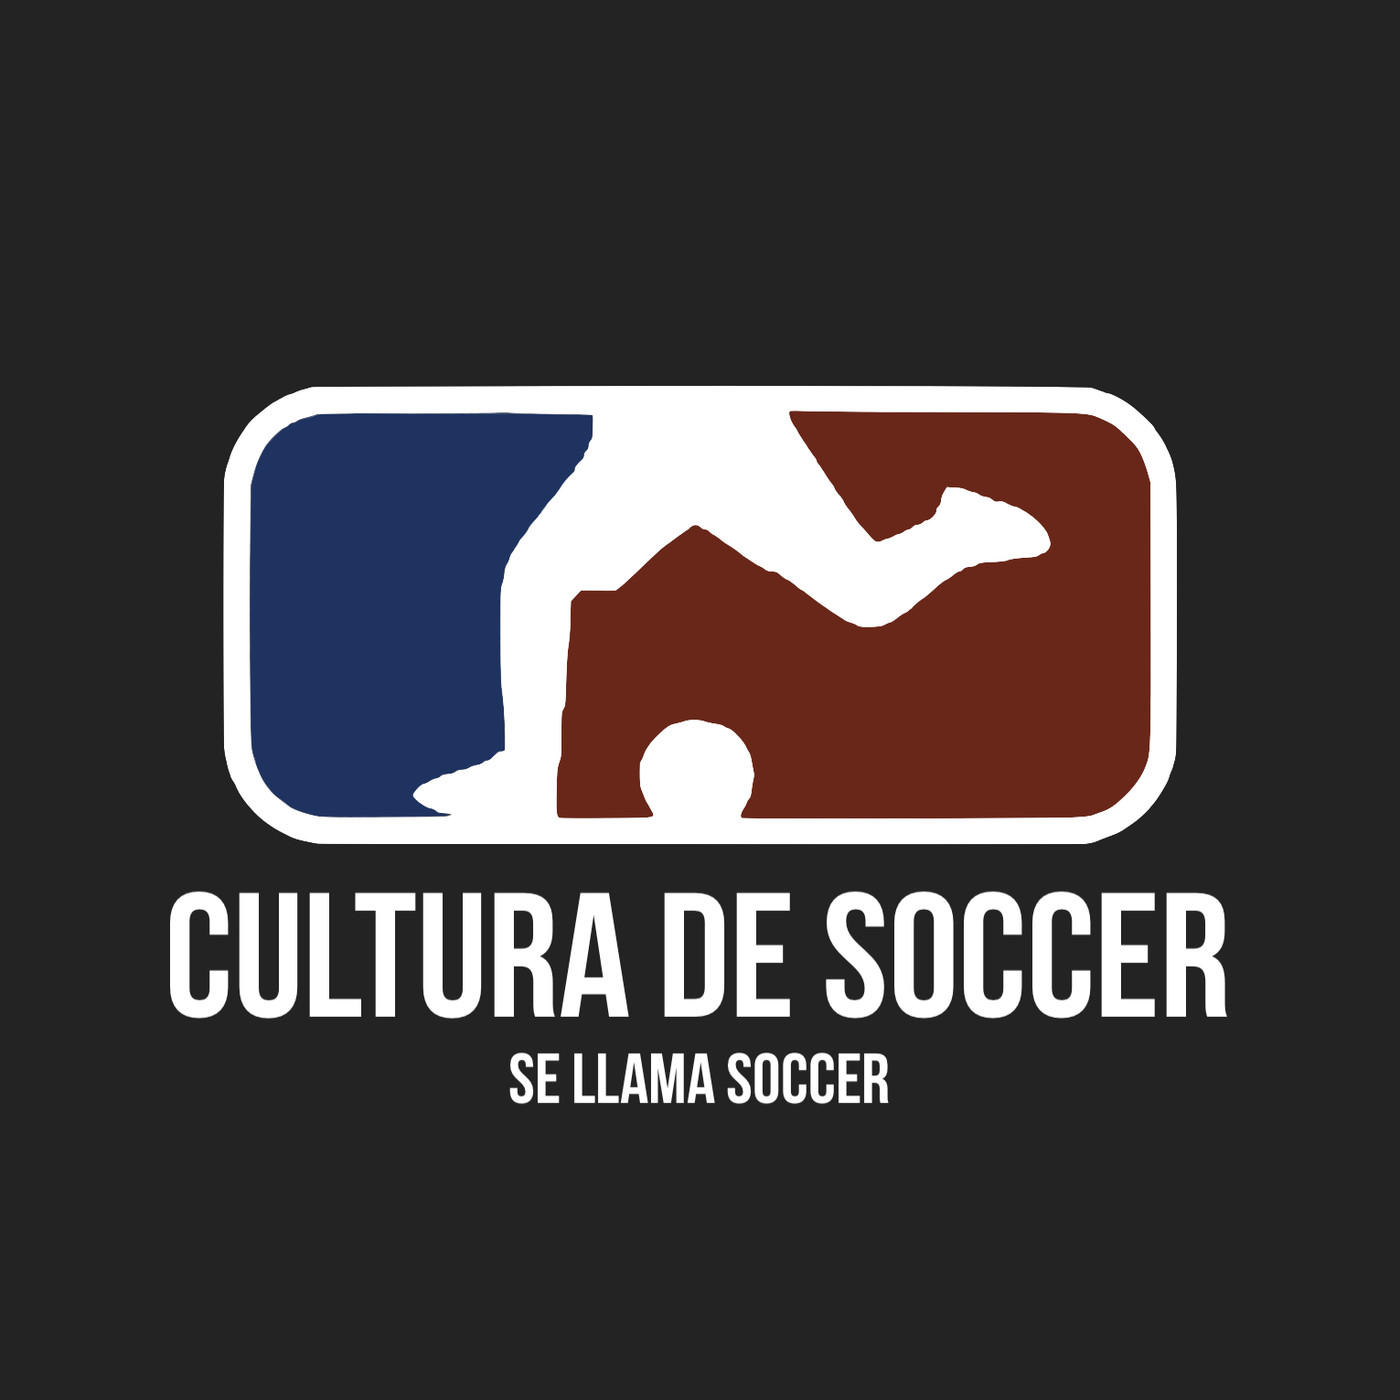 Cultura de soccer